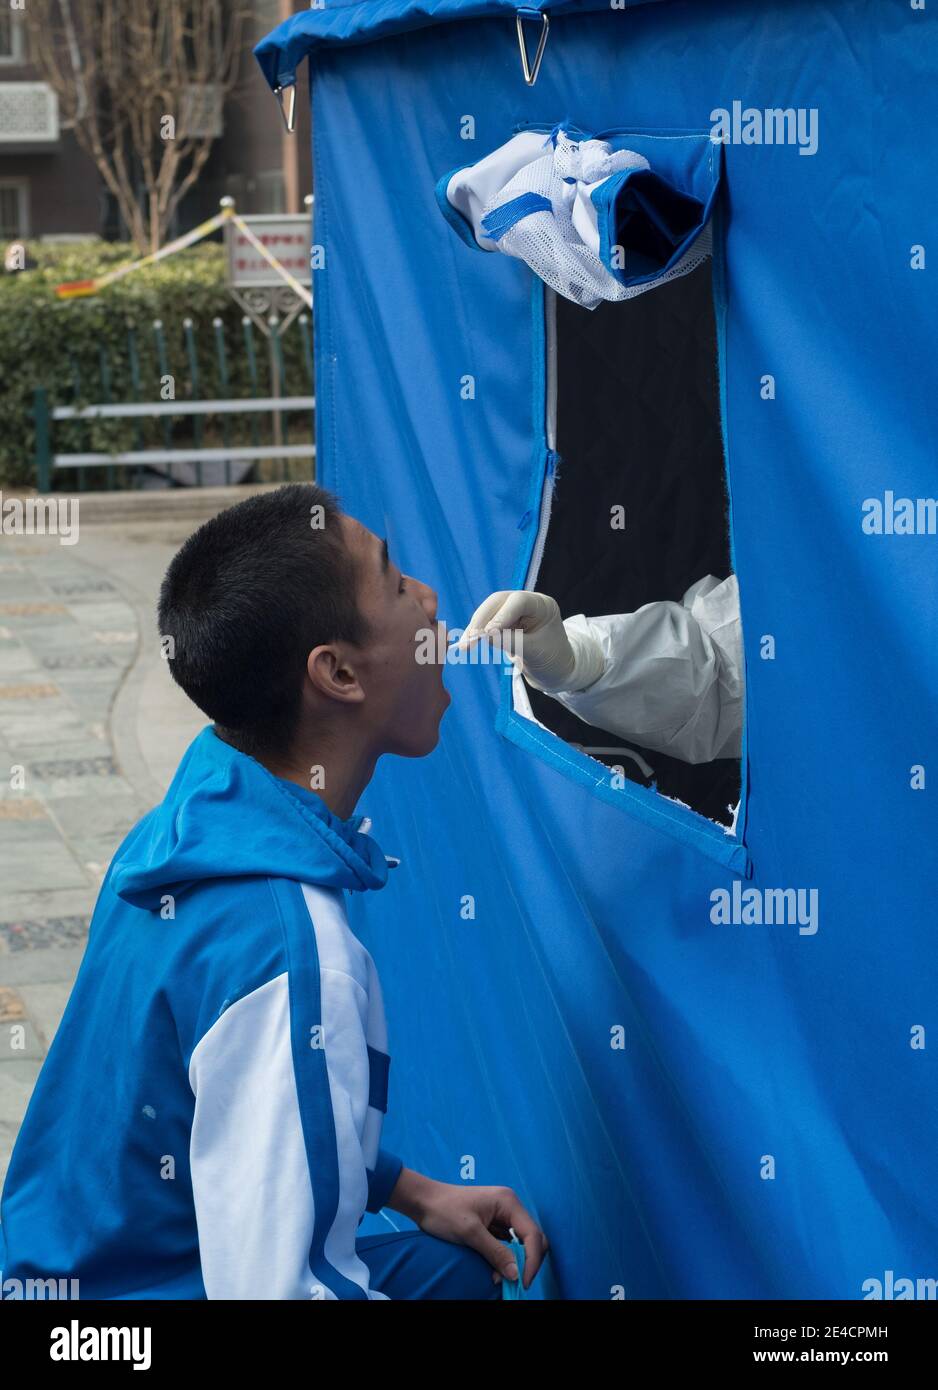 Un travailleur médical prélève un écouvillon auprès d'un garçon pour des tests d'acide nucléique, à la suite de nouveaux cas de coronavirus à Beijing, en Chine, le 23 janvier 2021. Banque D'Images